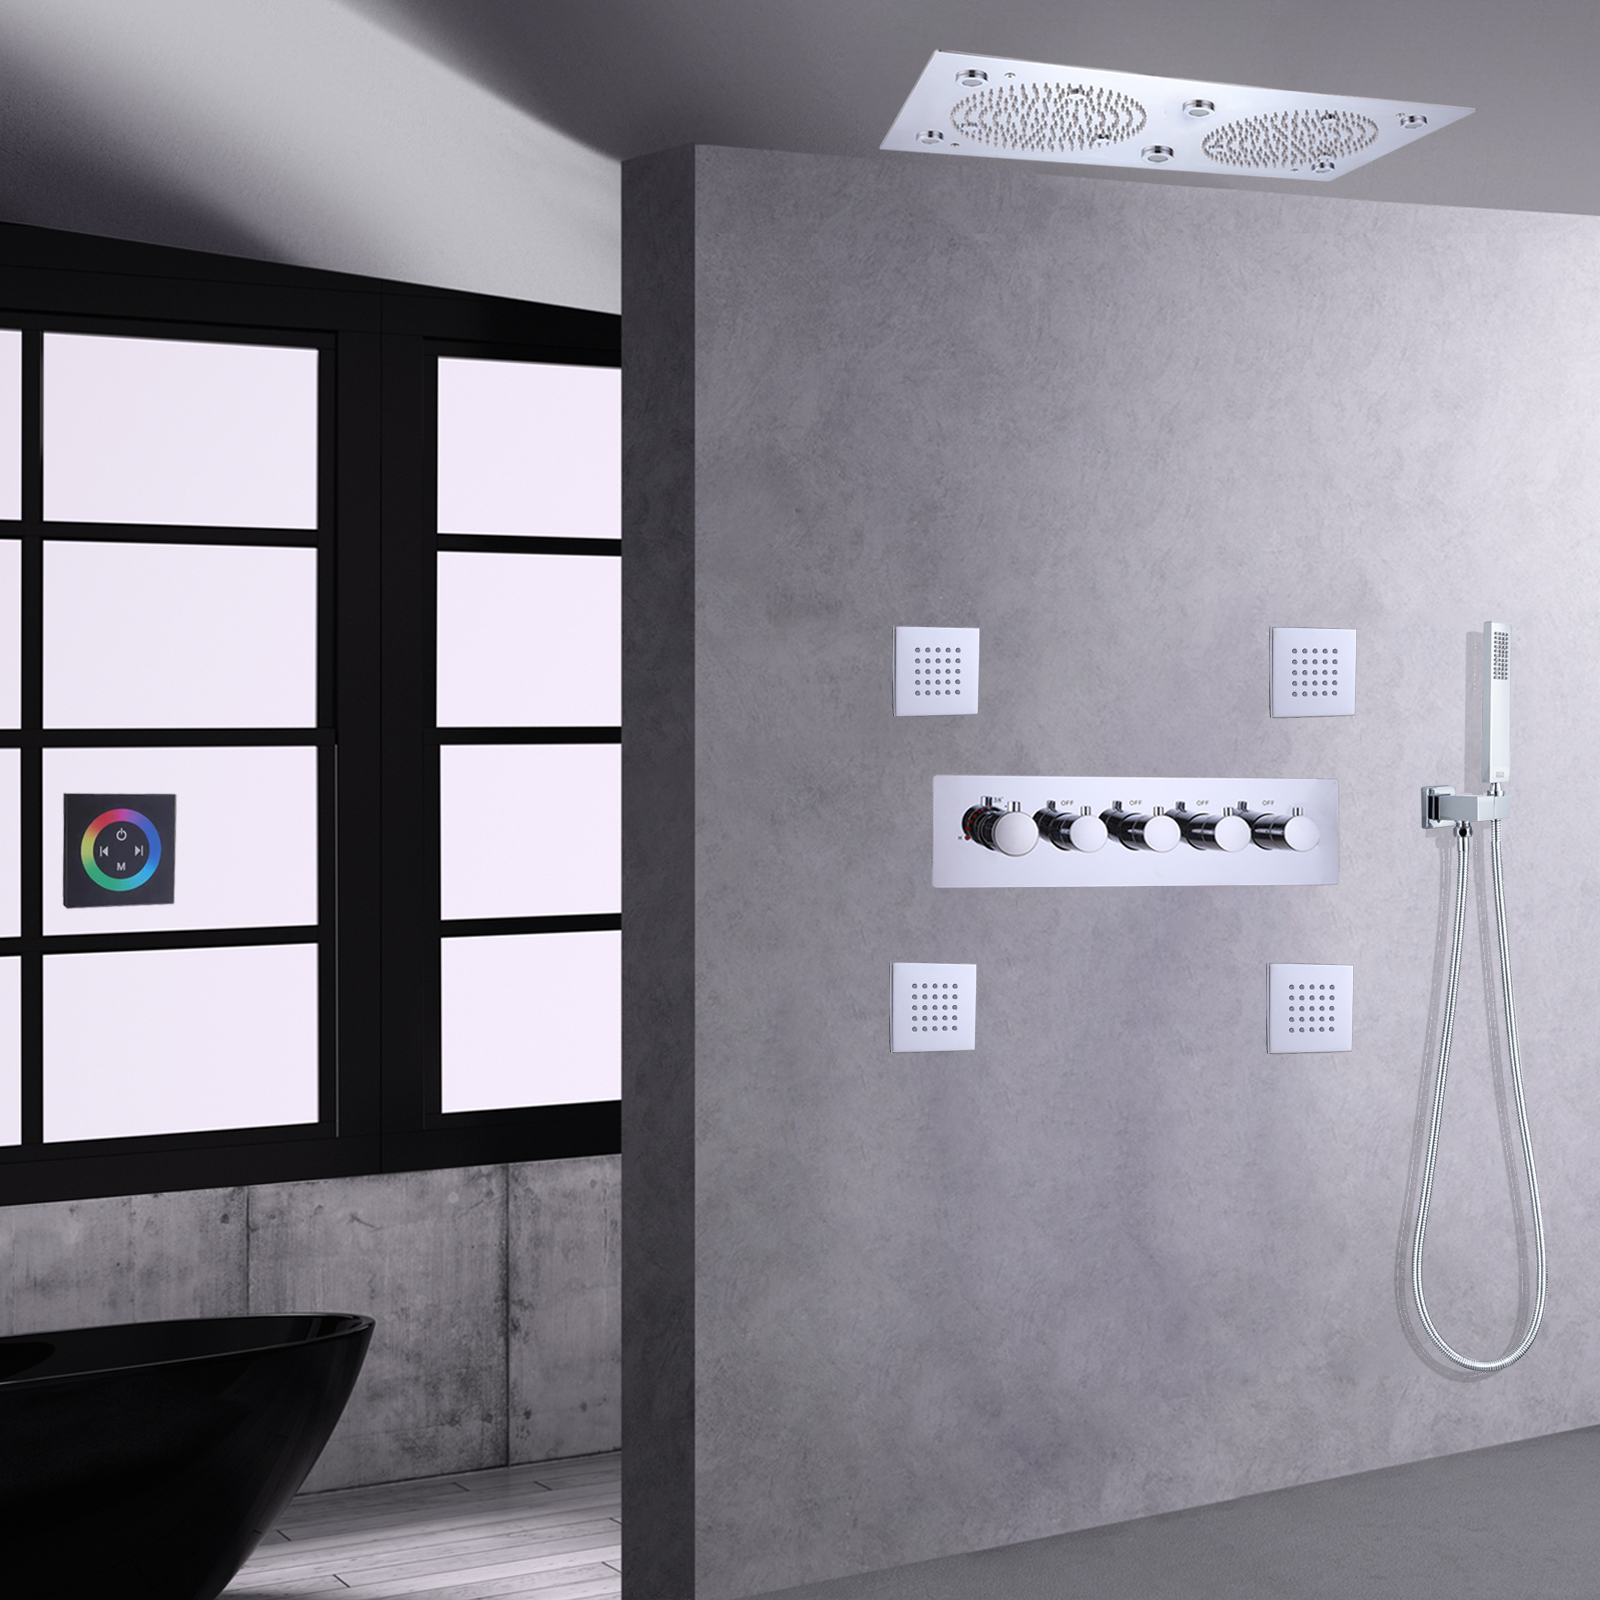 الكروم المصقول LED حمام دش صنبور مجموعة الحمام ثرموستاتي نظام دش متعدد الوظائف